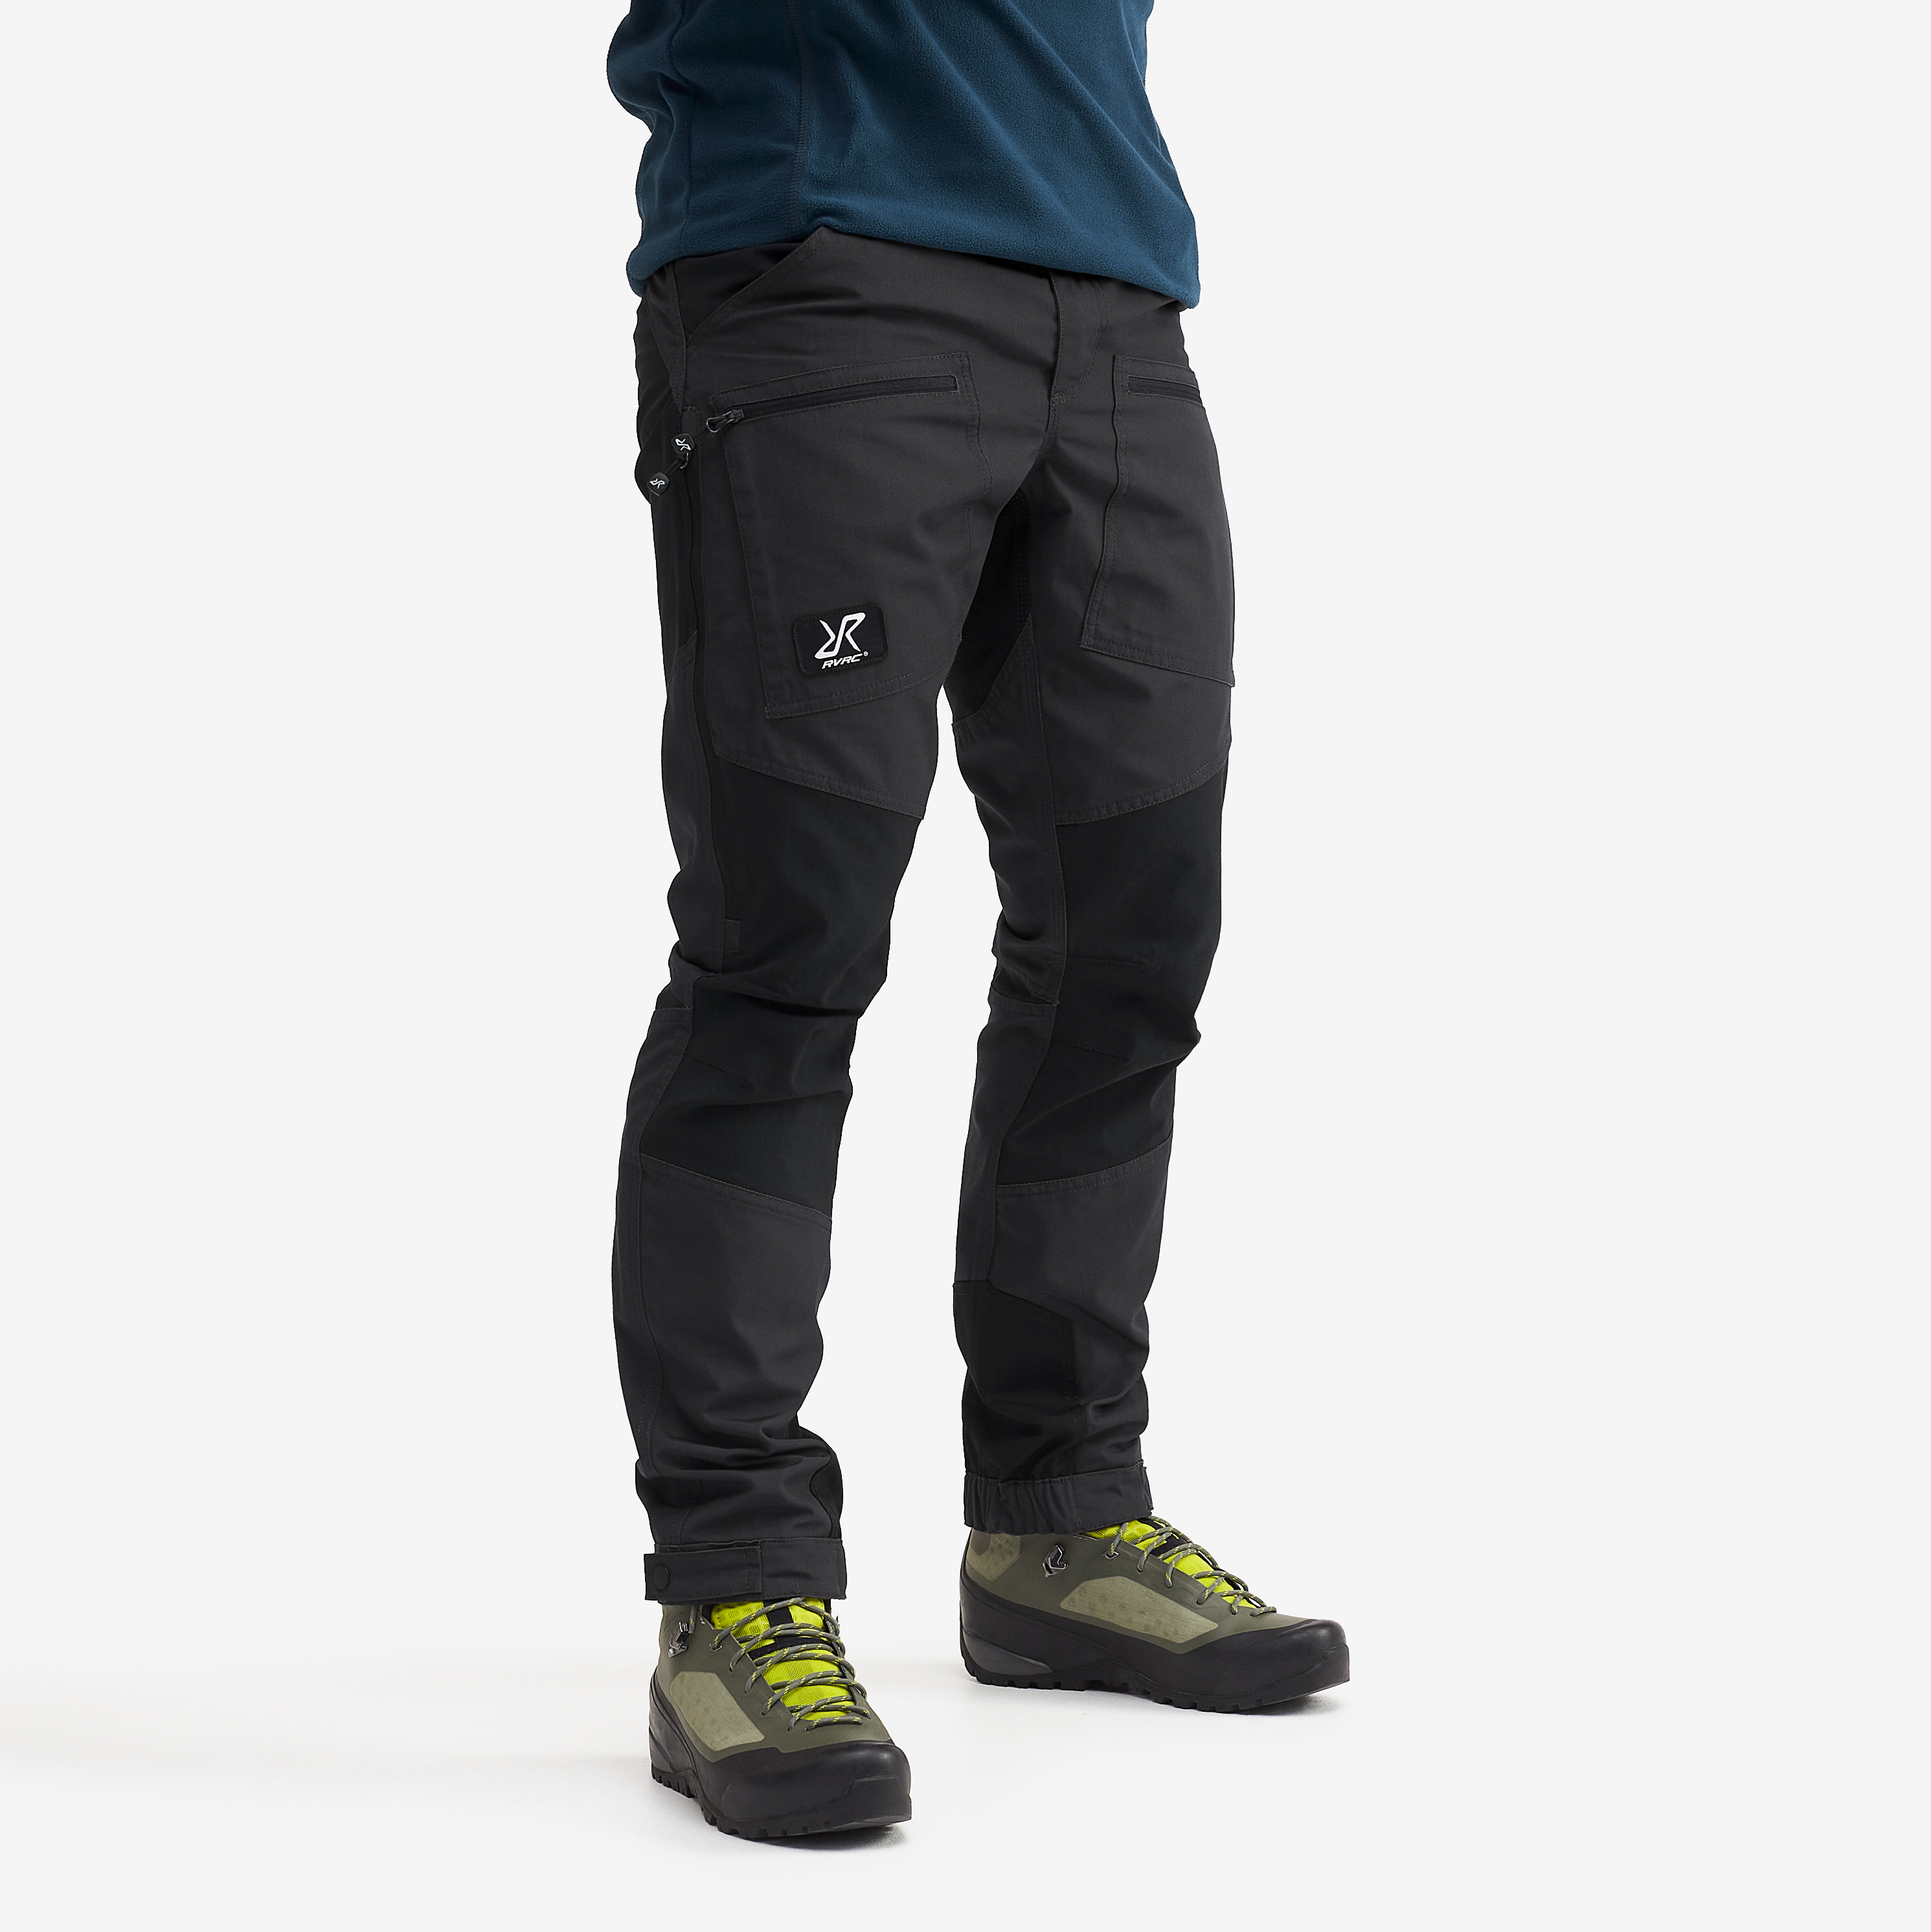 Nordwand Pro Short turistické kalhoty pro muže v tmavě šedé barvě